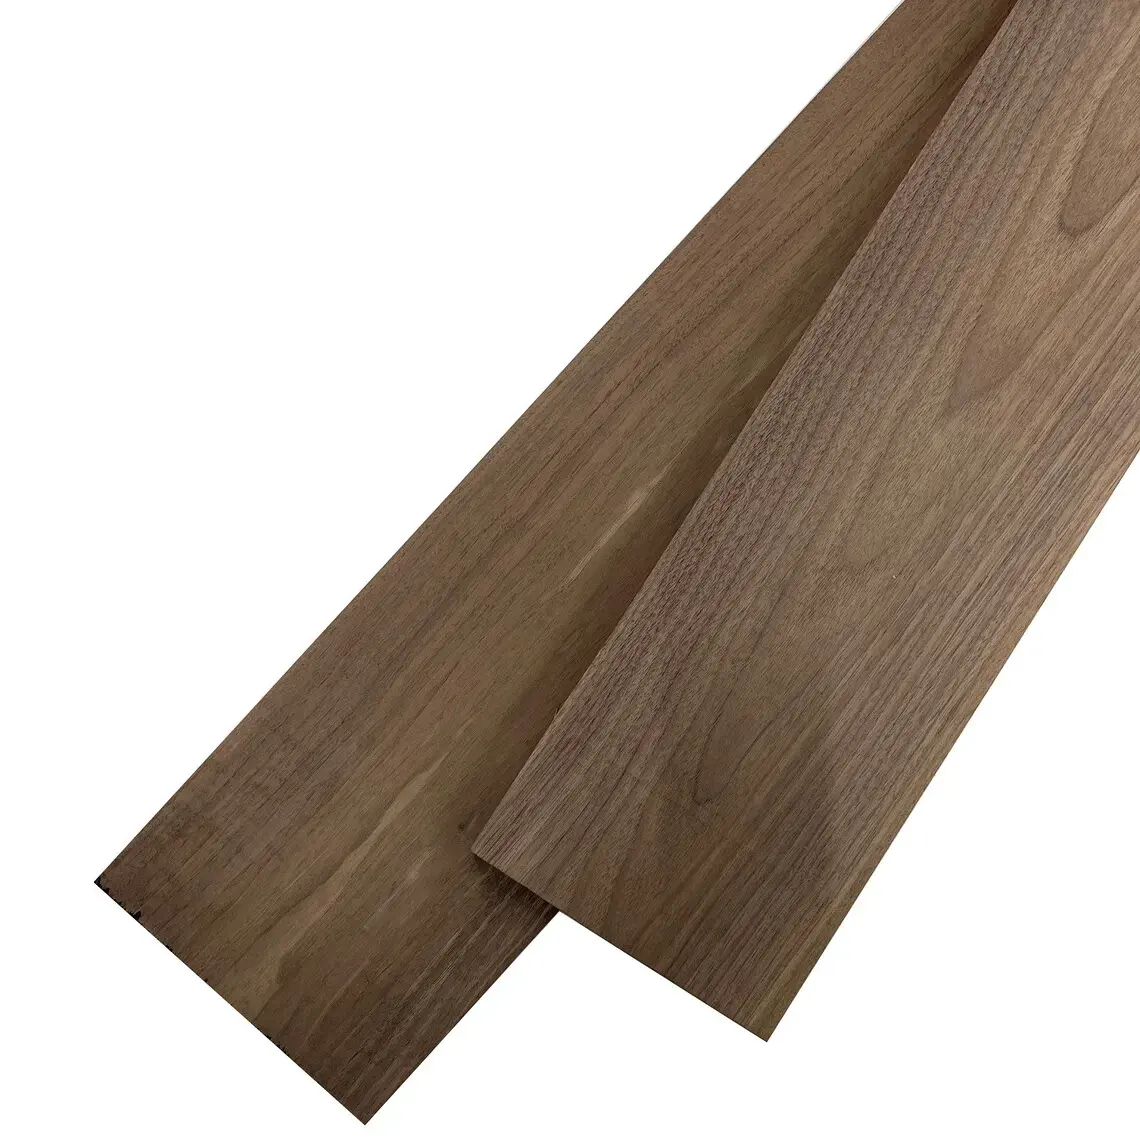 Stampa a pennello modello 3D Design scegliere pavimenti in legno duro con spessore 18mm pavimento europeo in legno massello di quercia